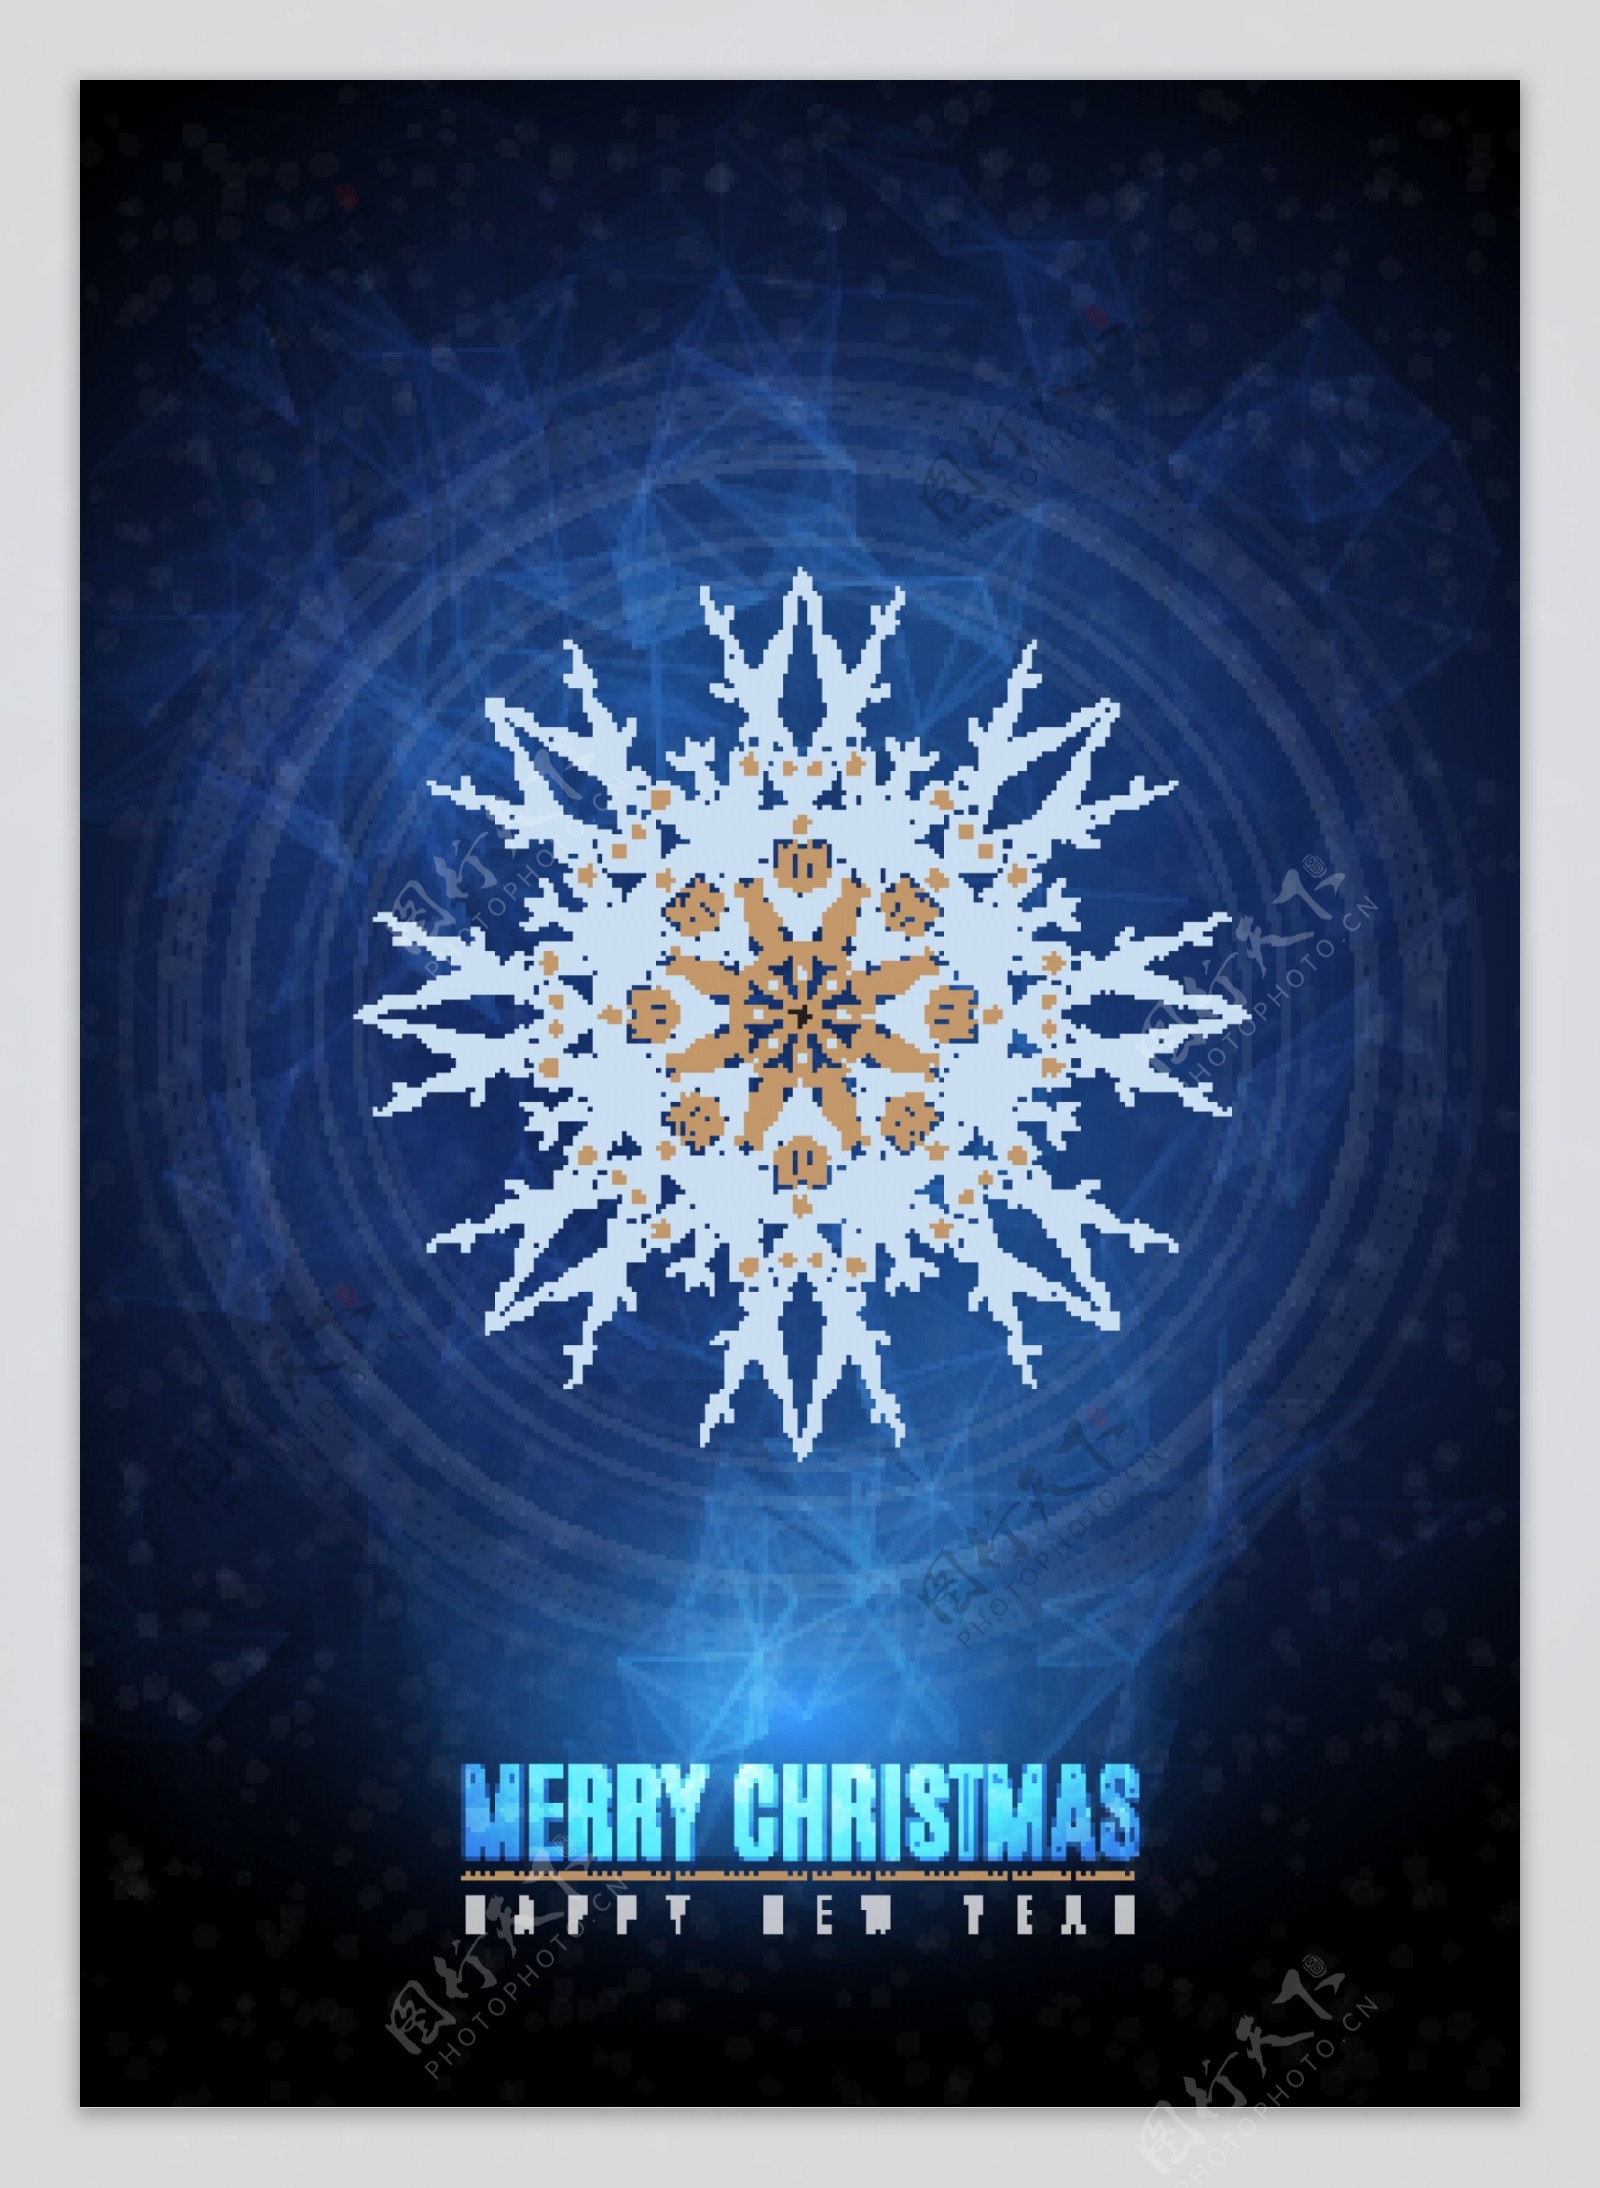 蓝色雪花图案圣诞海报矢量素材下载